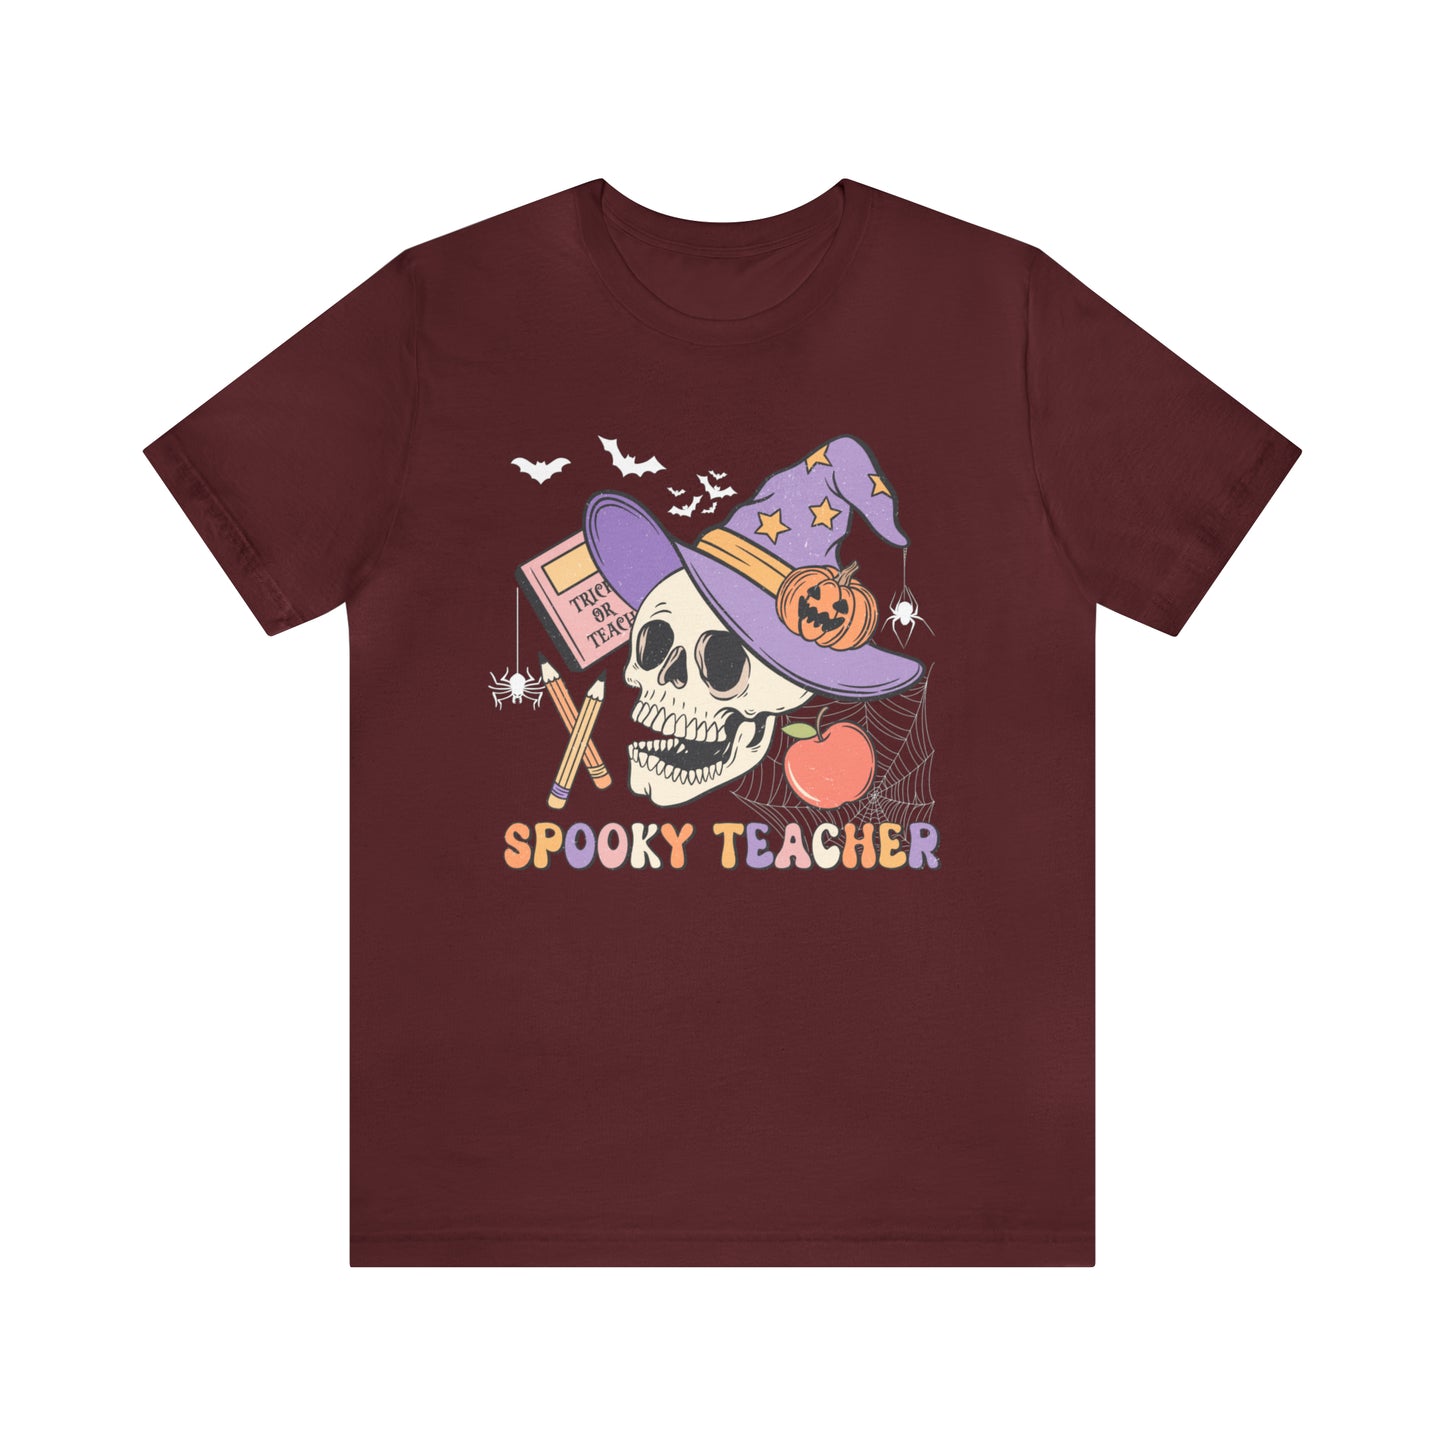 Teacher Shirt, Trick Or Teach Shirt, Spooky Teacher, Teacher Halloween Shirt, Teaching My Boos, Fall Teacher Shirt, T678